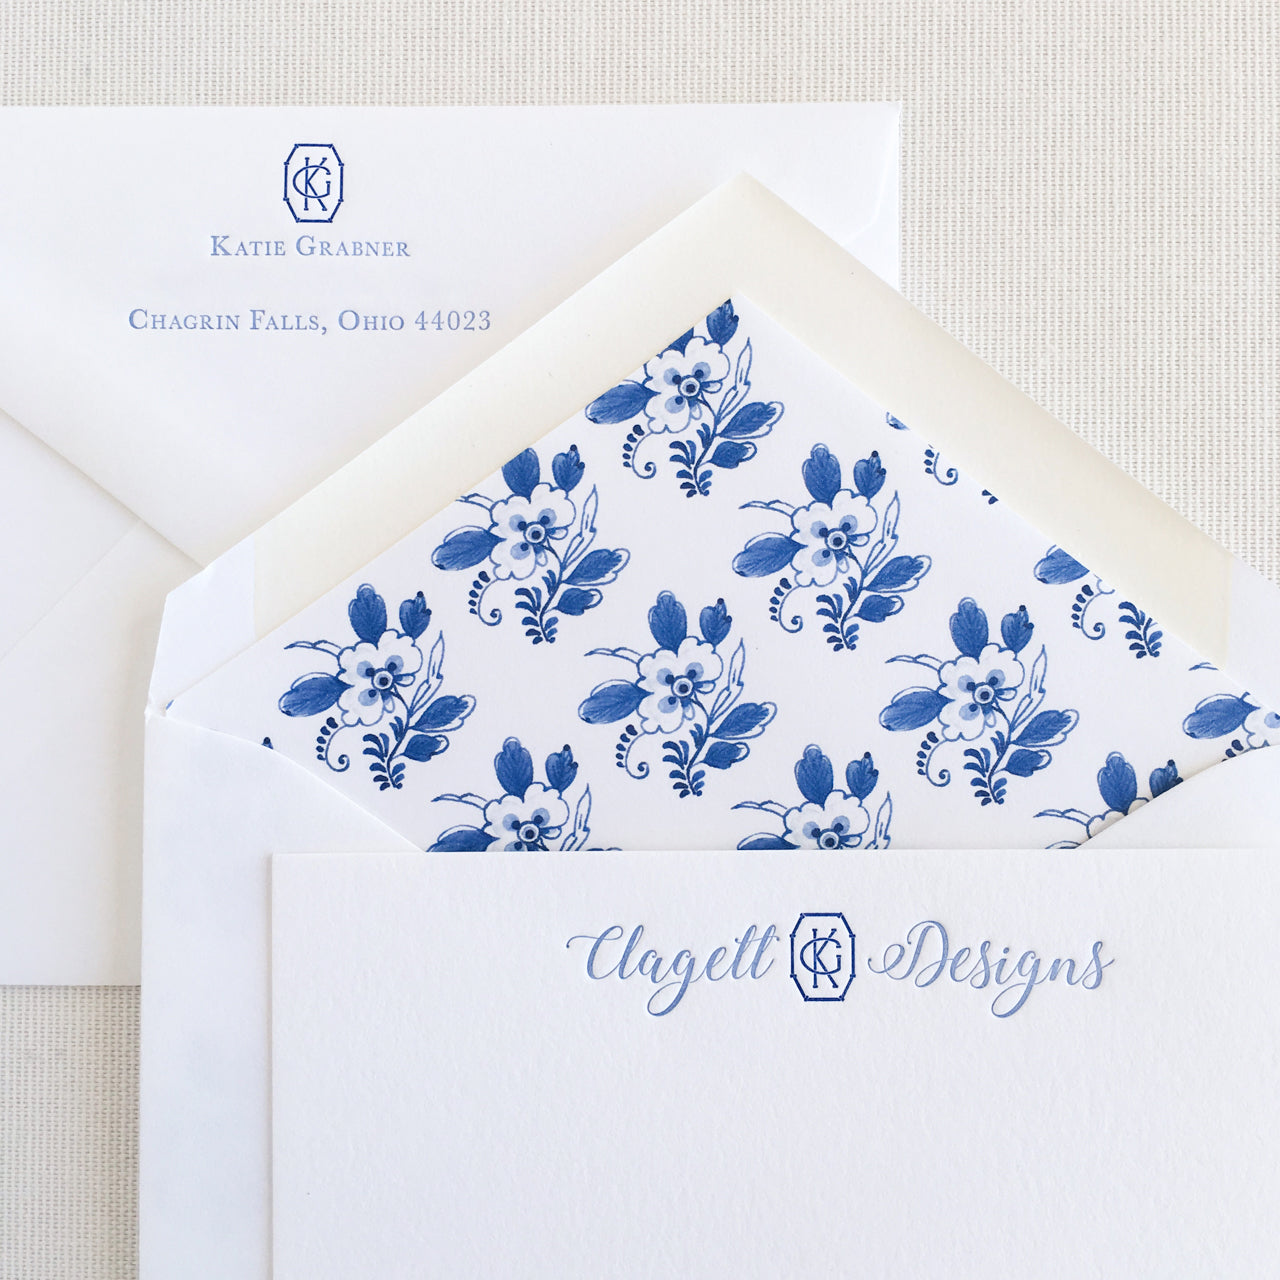 Custom Business Letterpress Stationery for Katie Grabner of Clagett Designs